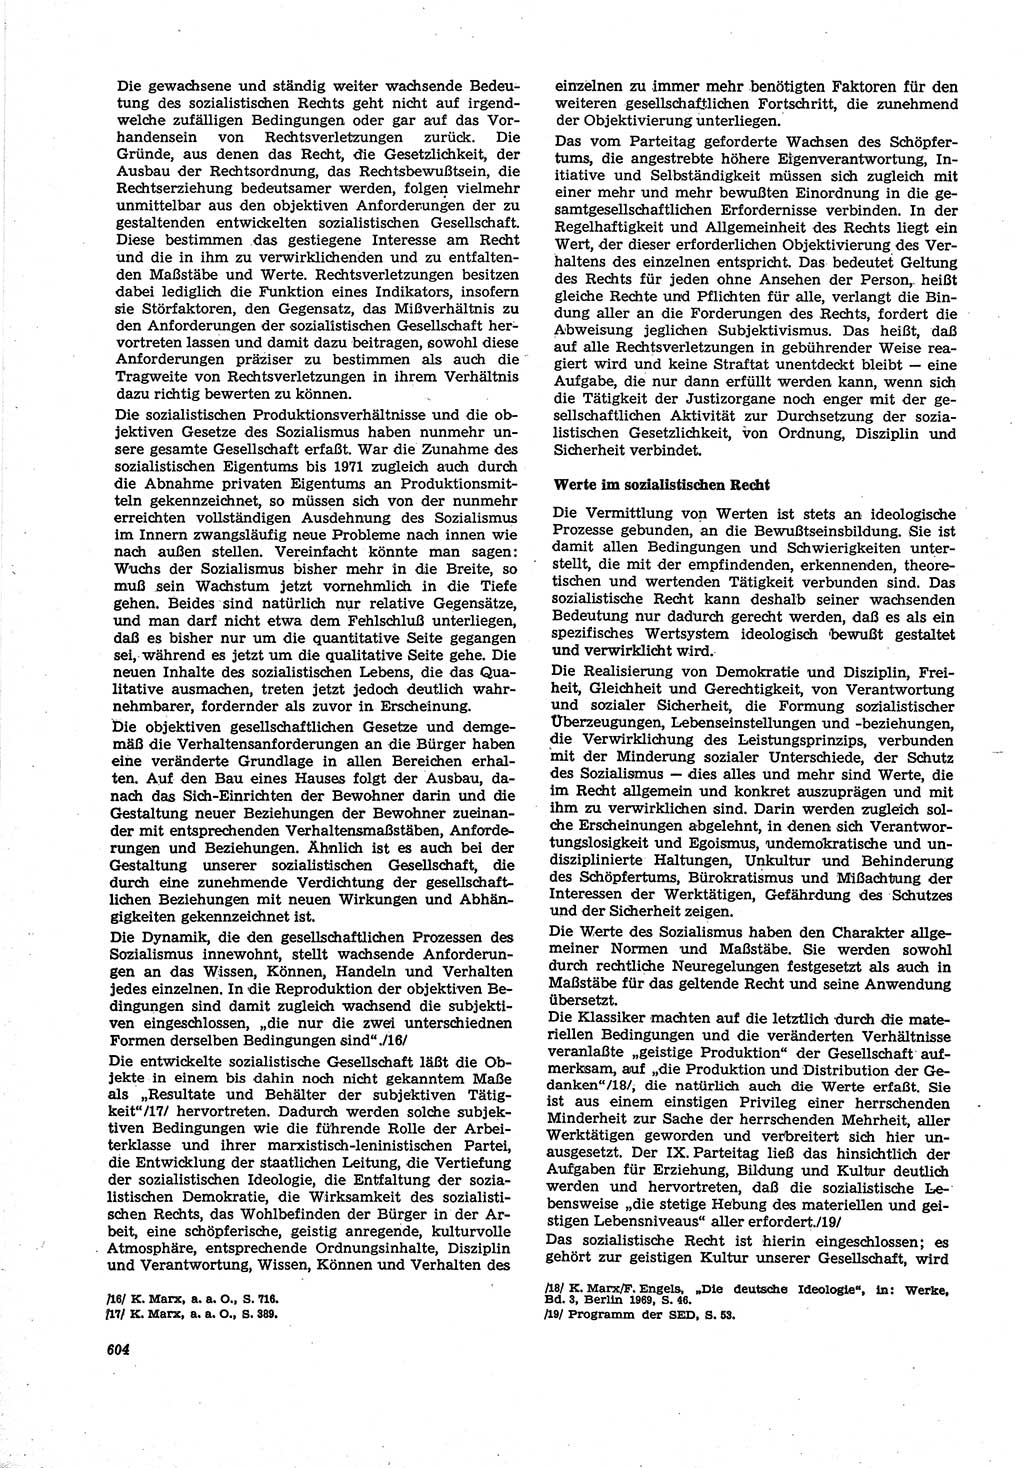 Neue Justiz (NJ), Zeitschrift für Recht und Rechtswissenschaft [Deutsche Demokratische Republik (DDR)], 30. Jahrgang 1976, Seite 604 (NJ DDR 1976, S. 604)